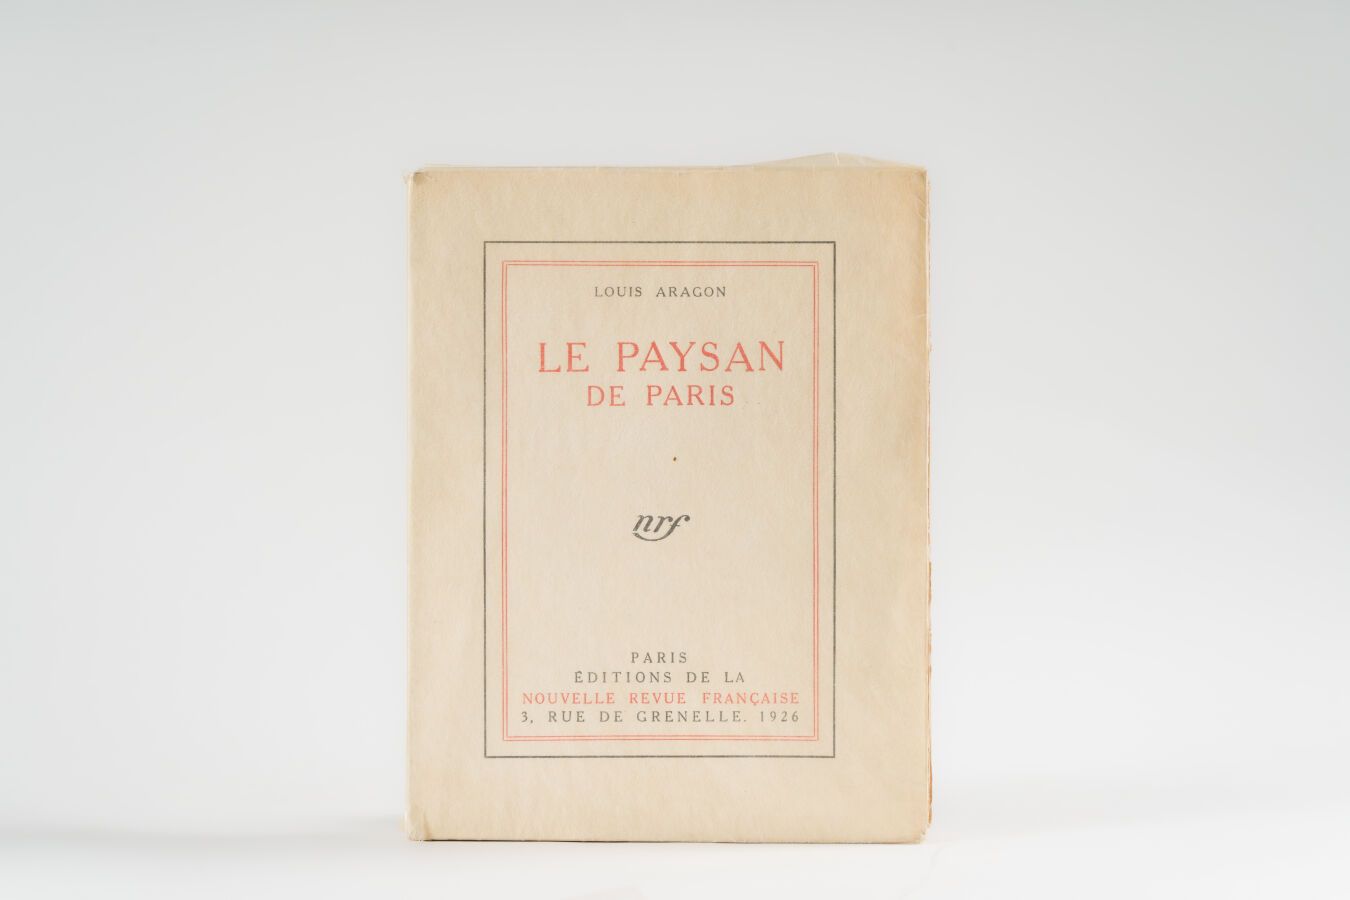 Null 14.阿拉贡（路易斯）。 
Le Paysan de Paris.巴黎，《法国新报》出版社，1926年，4开本，平装本。
第一版。

1/109册，以&hellip;